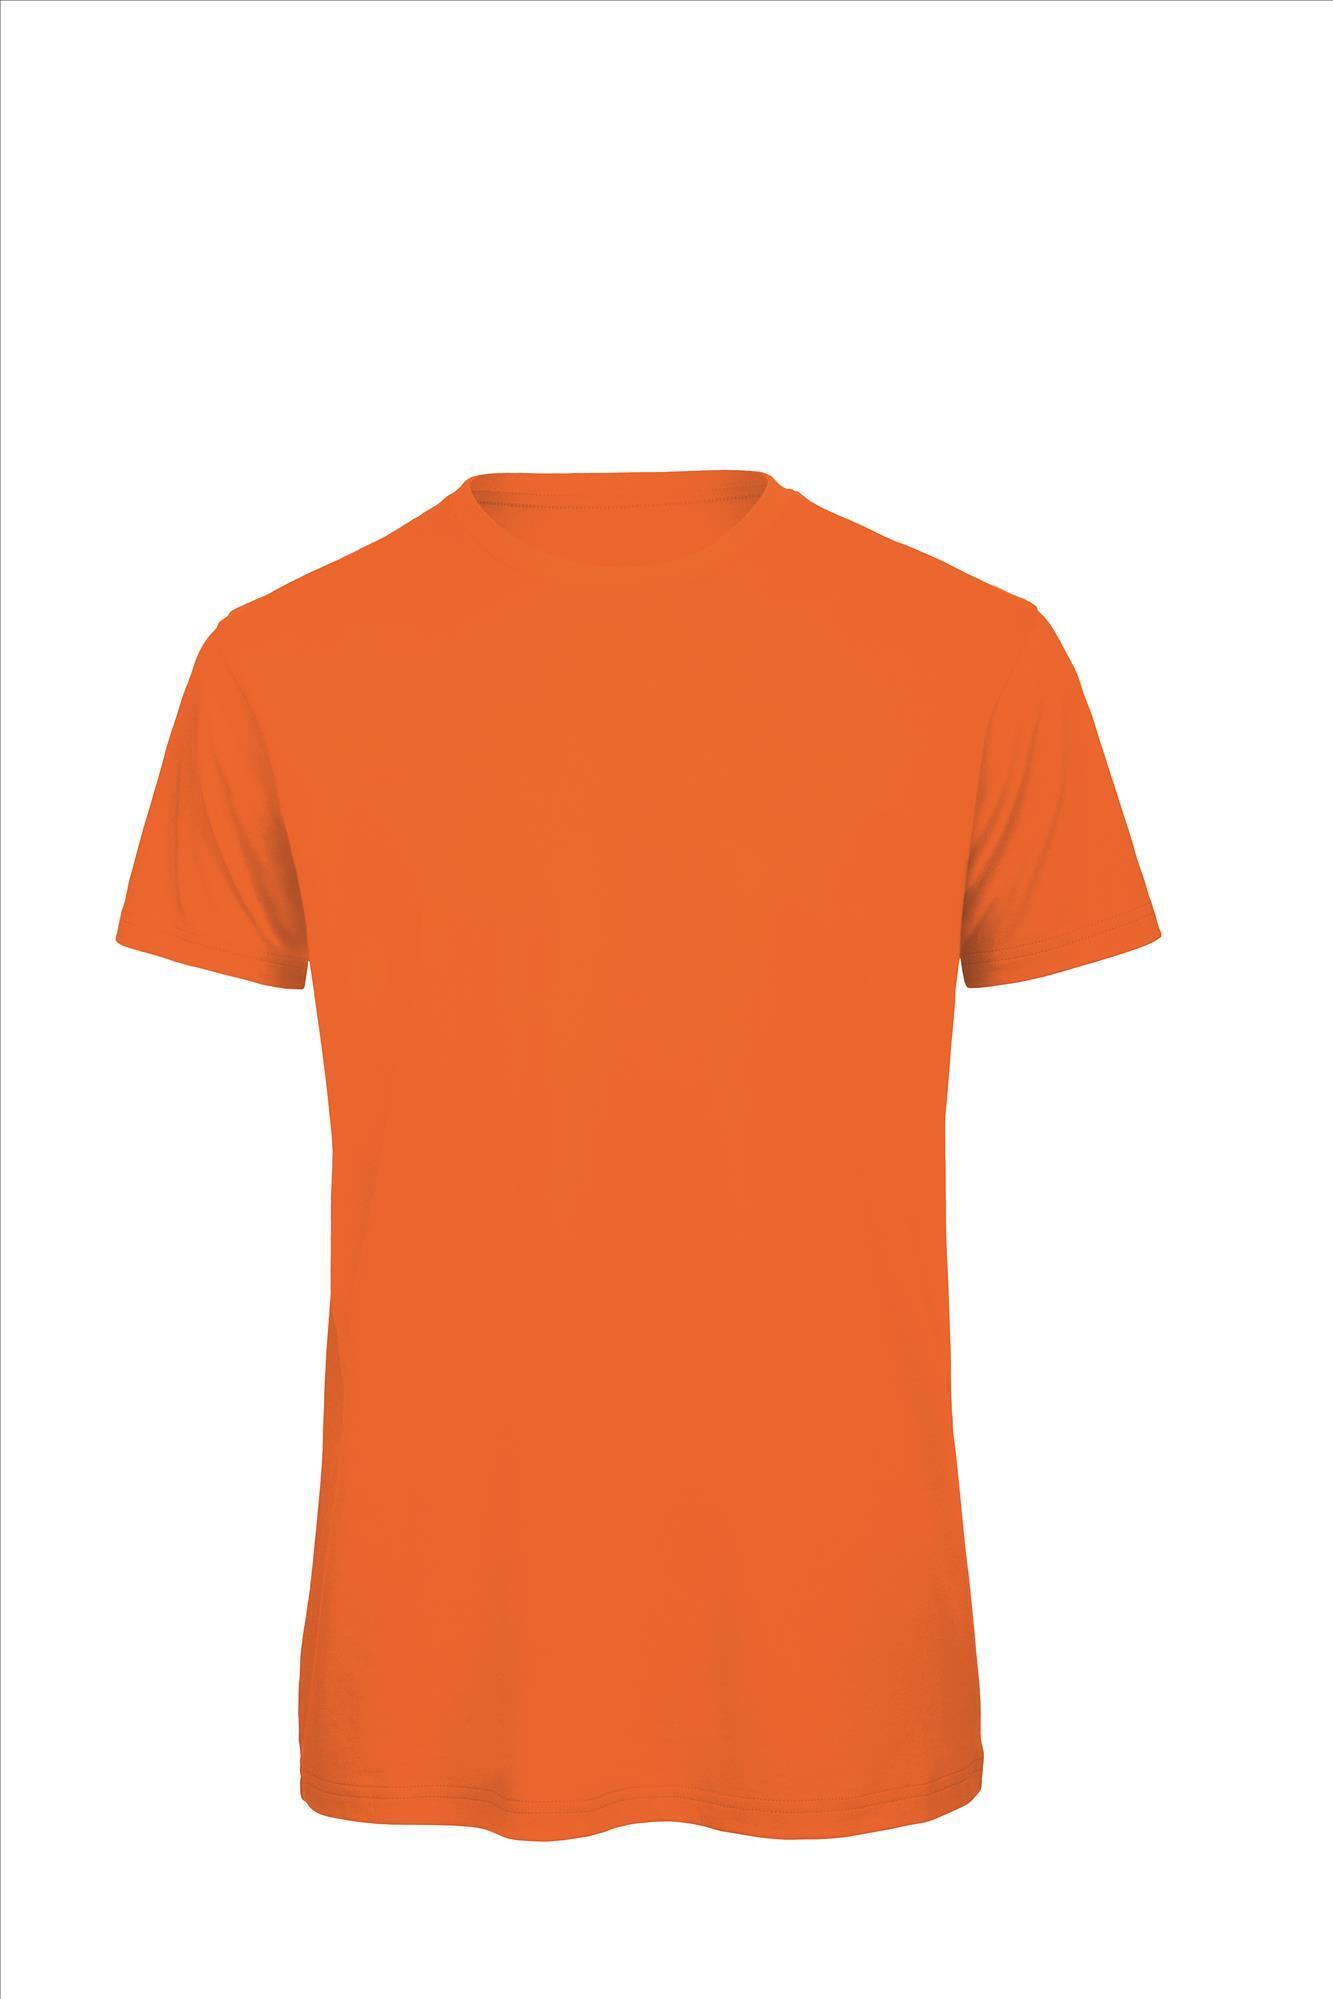 Heren T-shirt oranje te personaliseren bedrukbaar duurzaam shirt